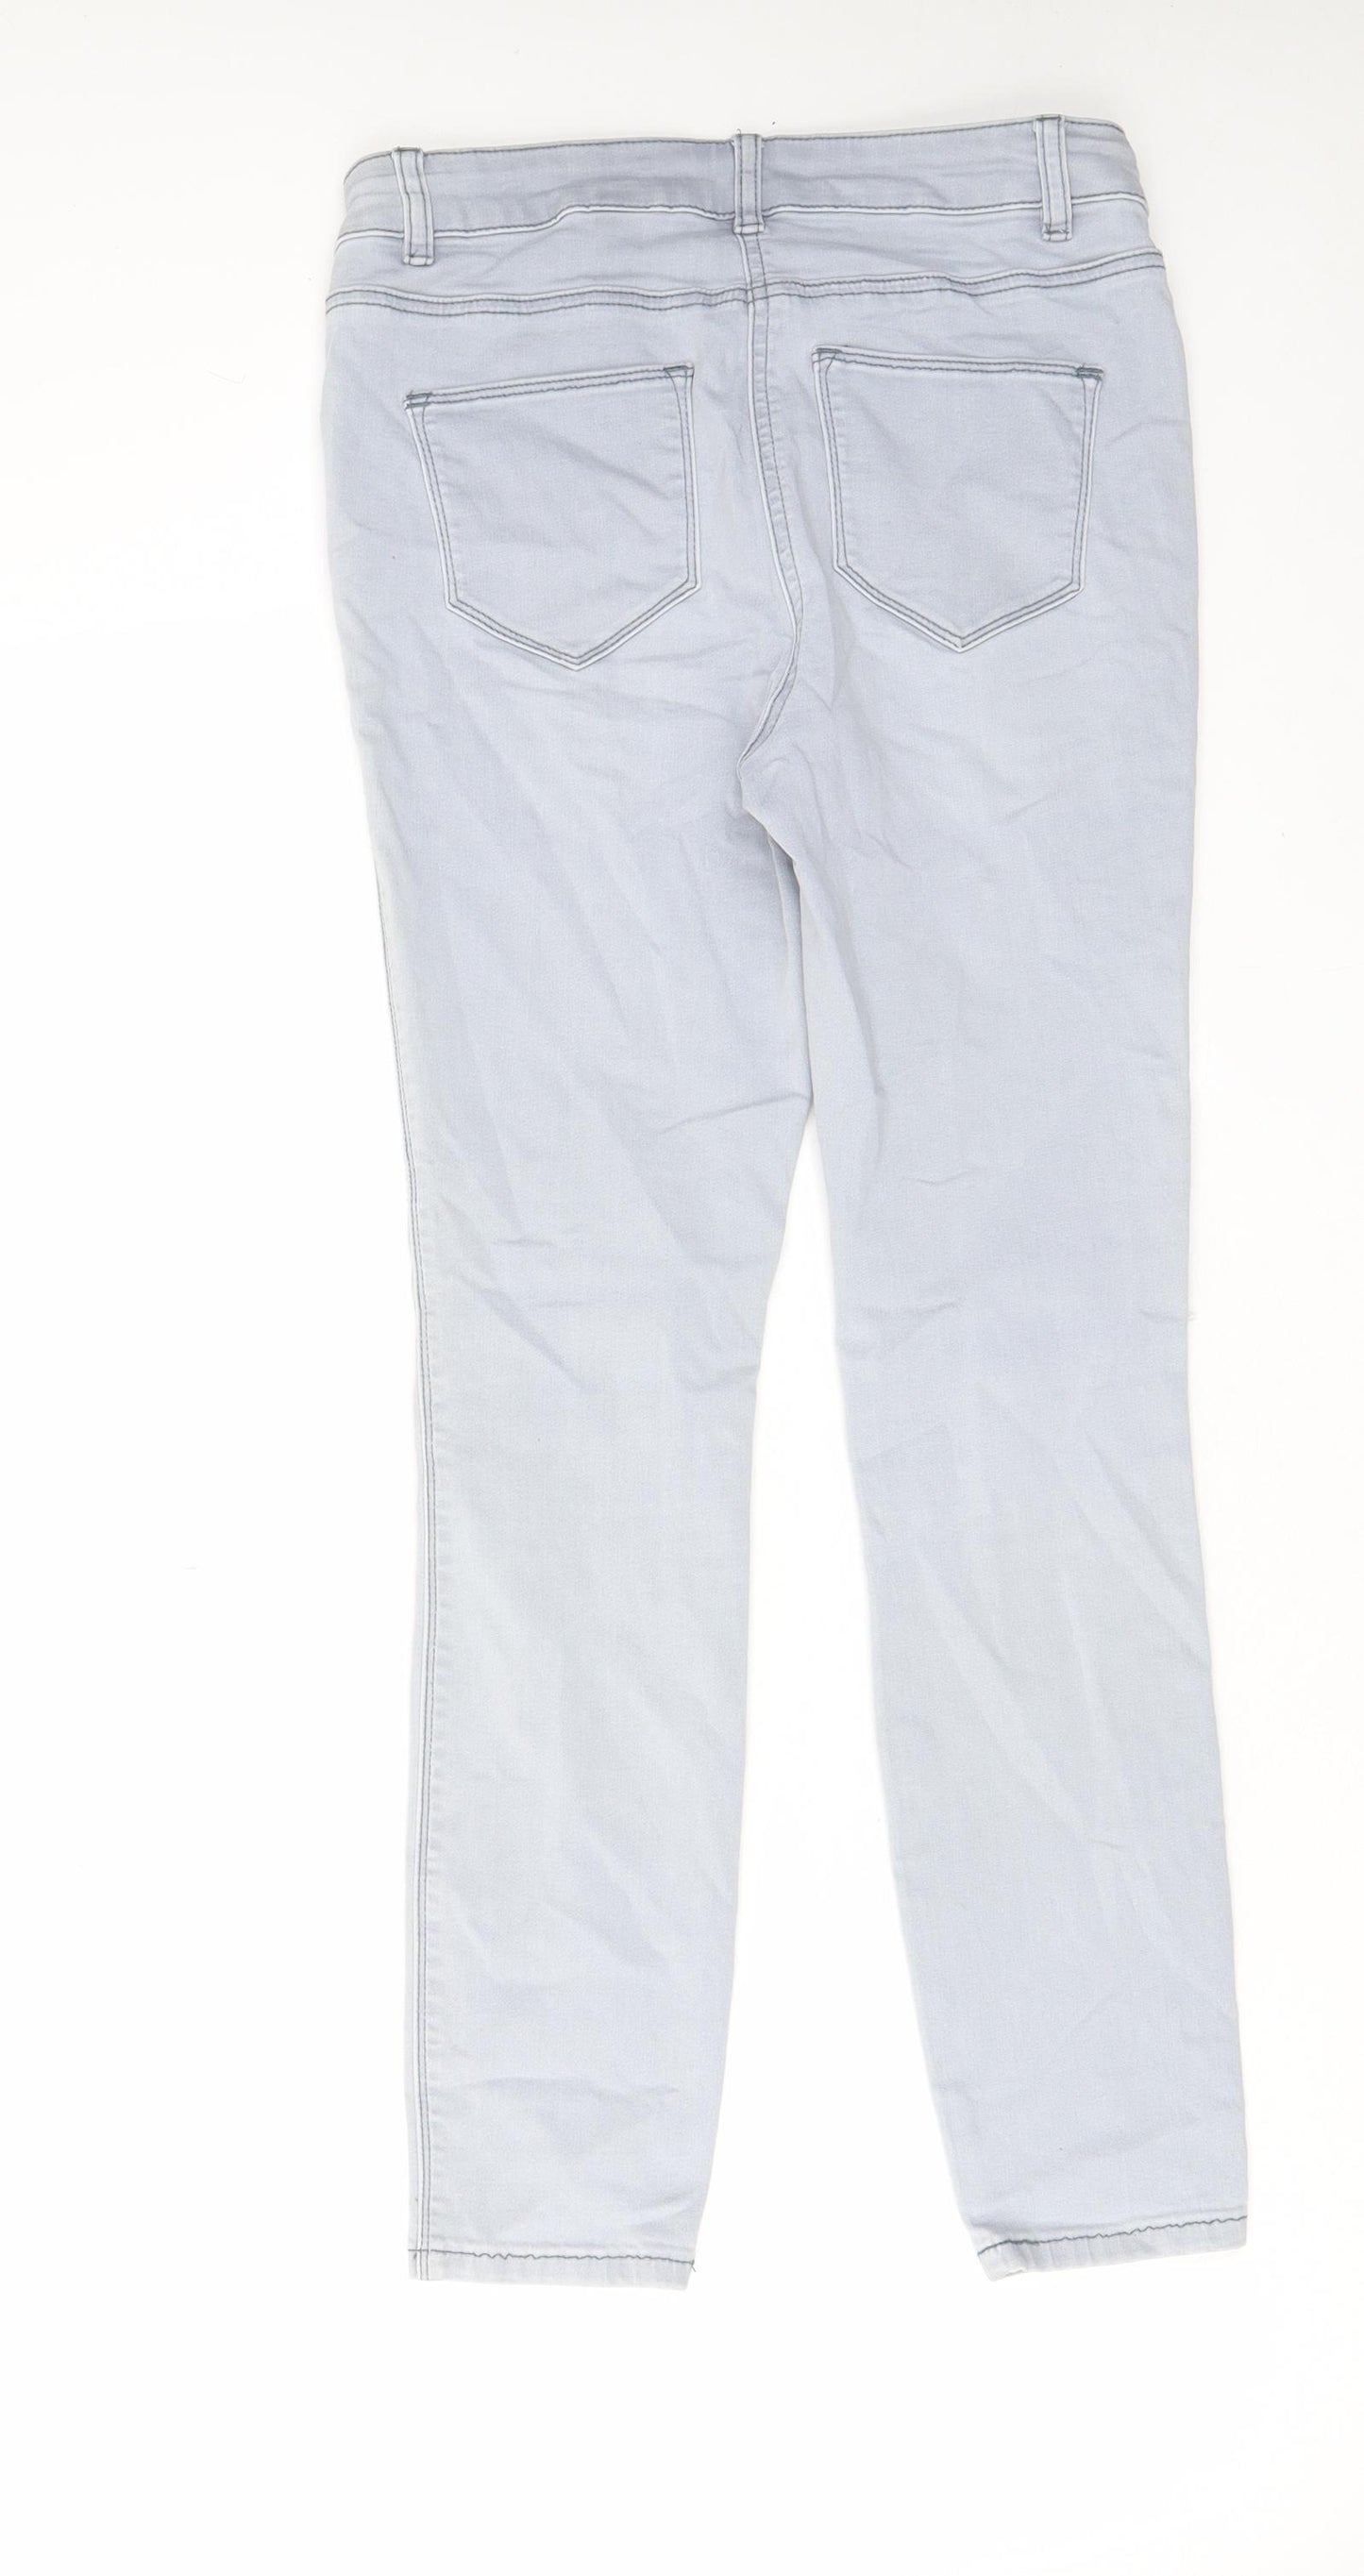 NEXT Womens Blue Cotton Skinny Jeans Size 10 L26 in Regular Zip - Open knee, Pockets, Belt Loops